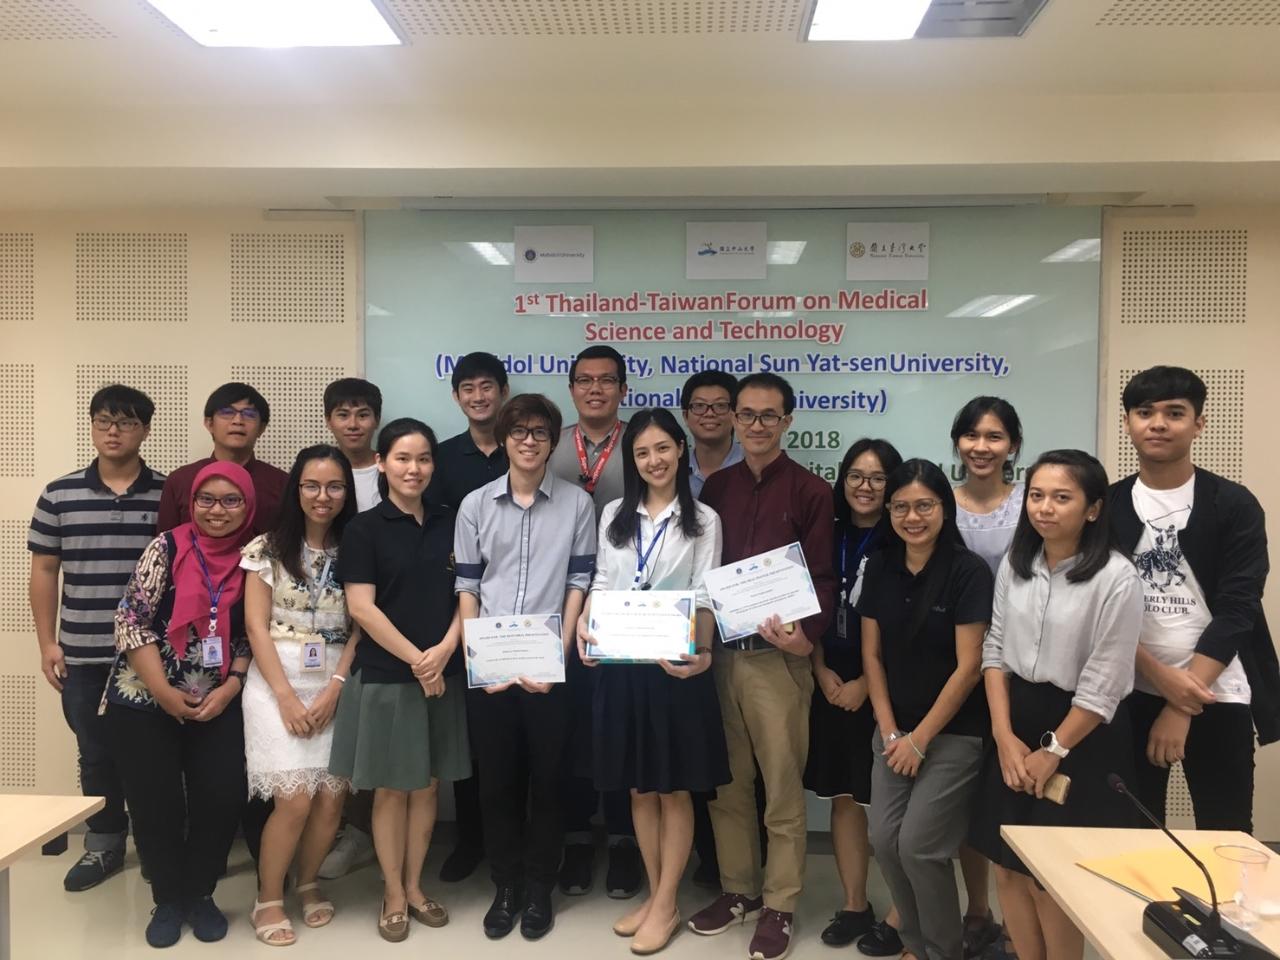 參與報告的泰國及台灣學生及得獎學生

